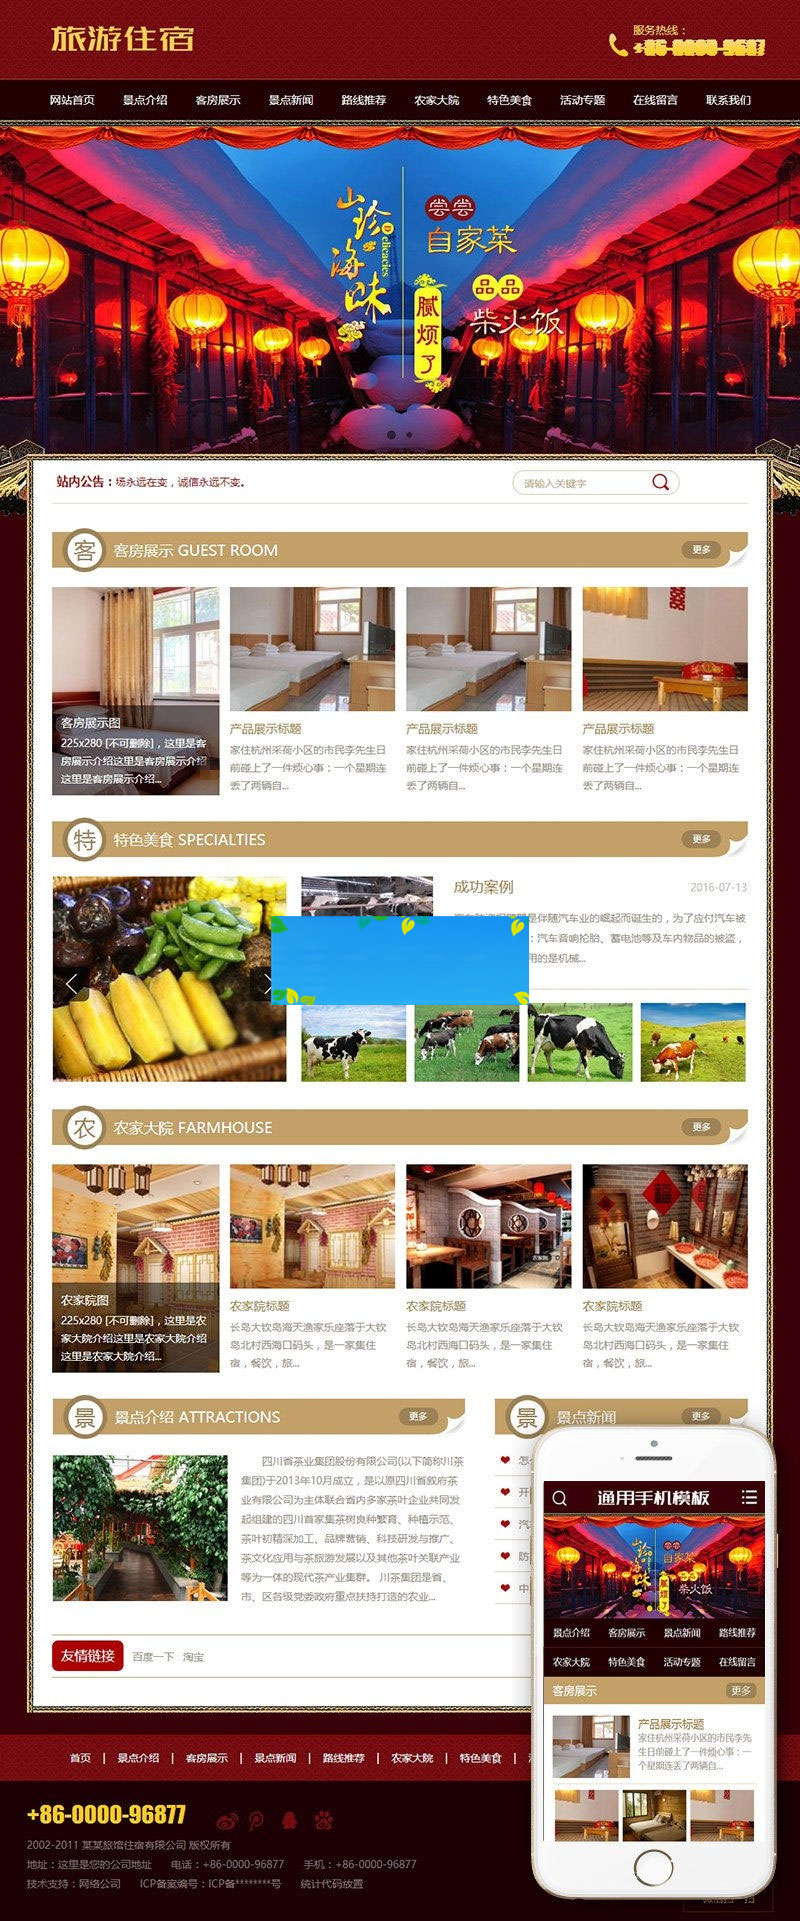 织梦dedecms古典中国风旅游住宿农家乐网站模板(带手机移动端)